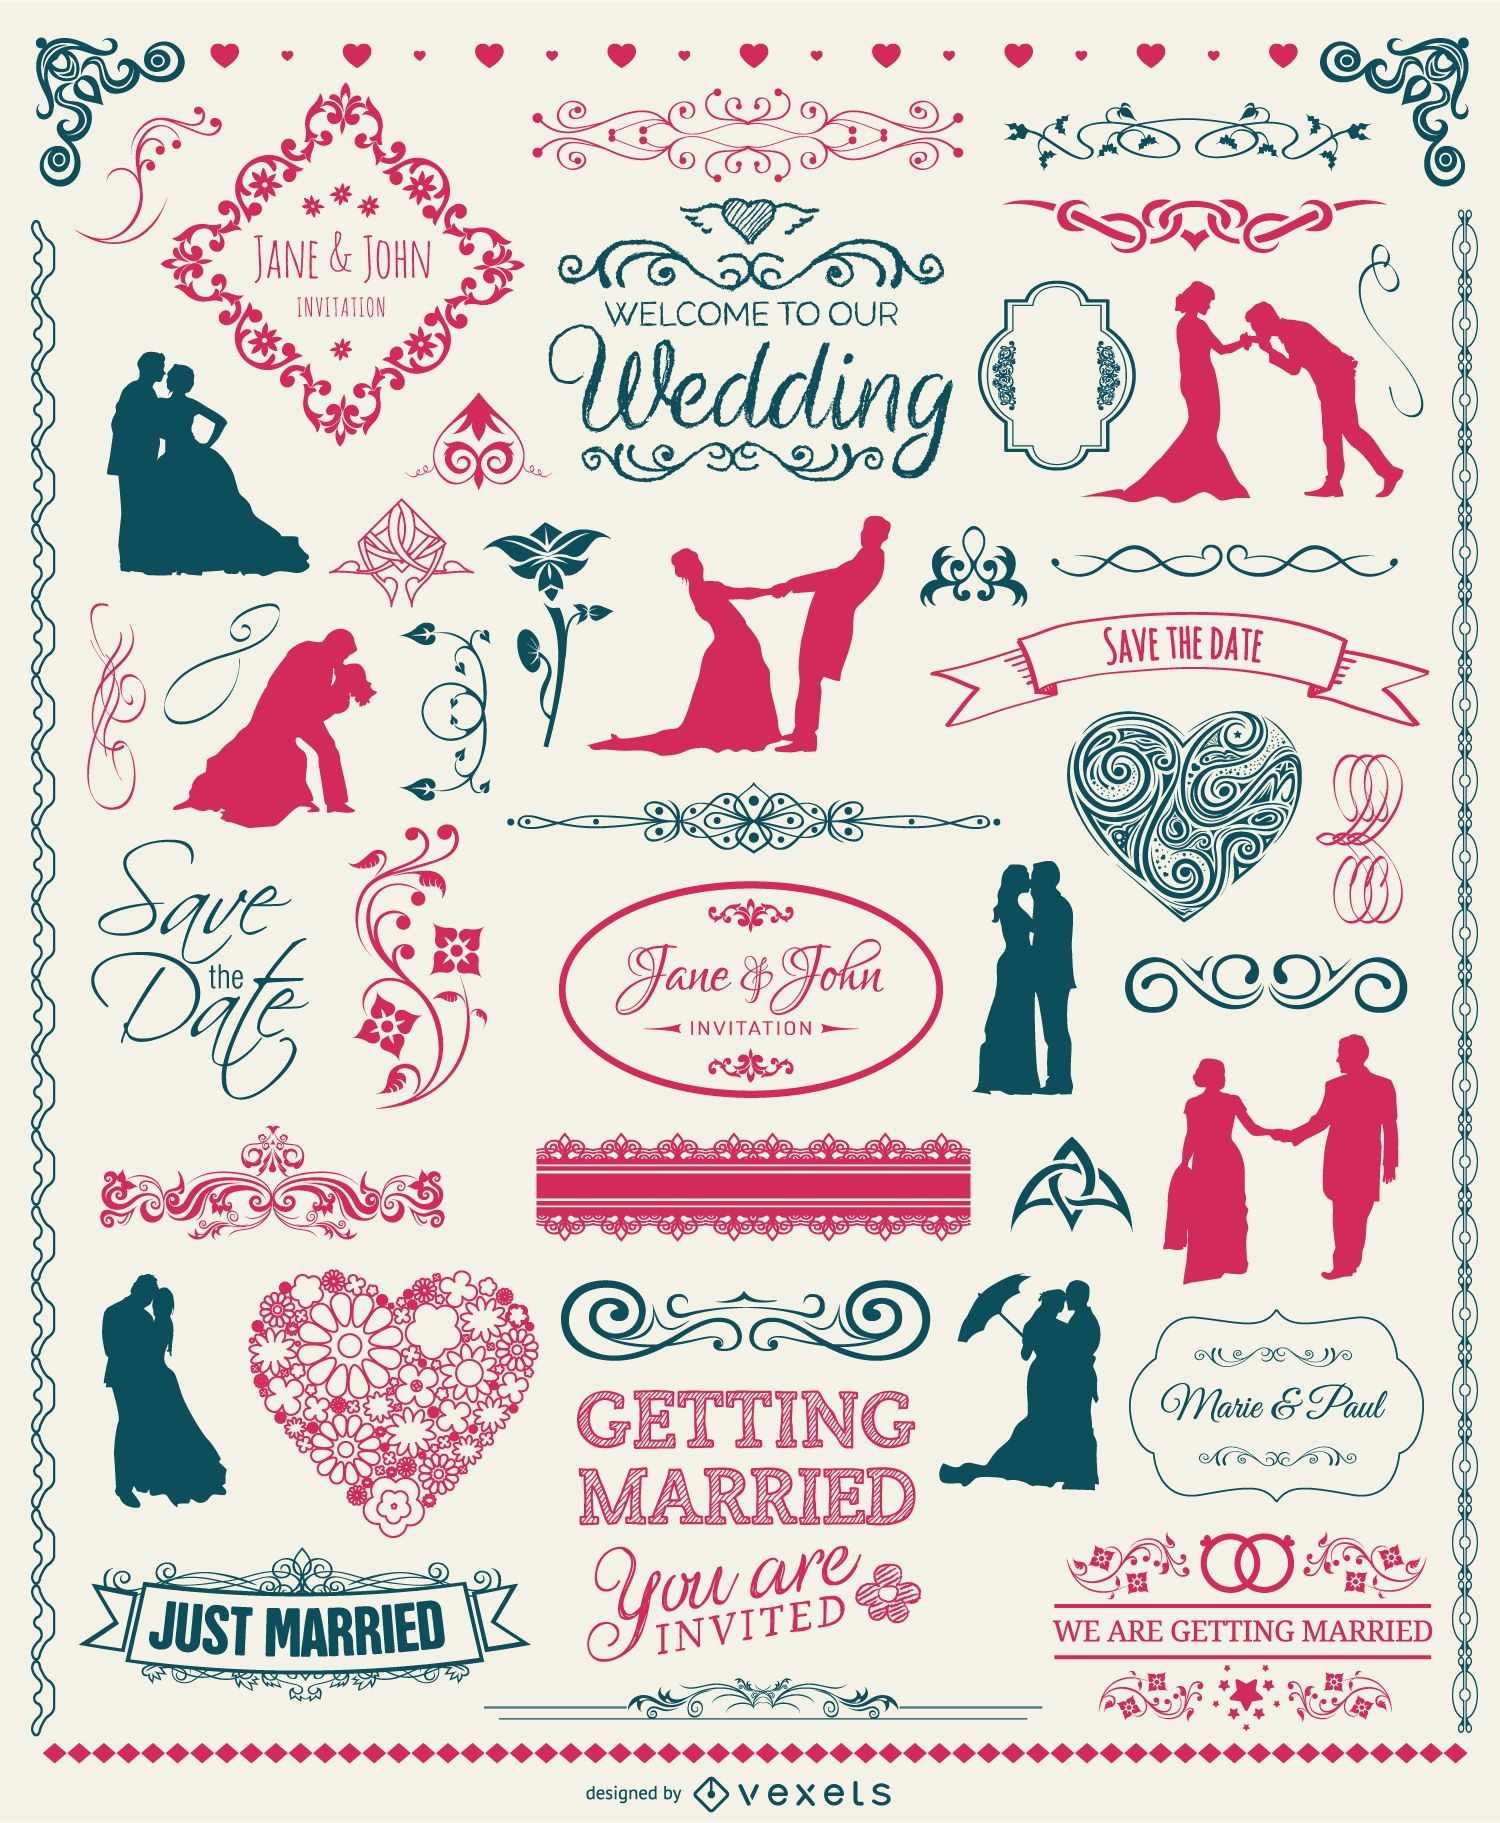 Conjunto de elementos de boda: insignias siluetas emblemas y adornos